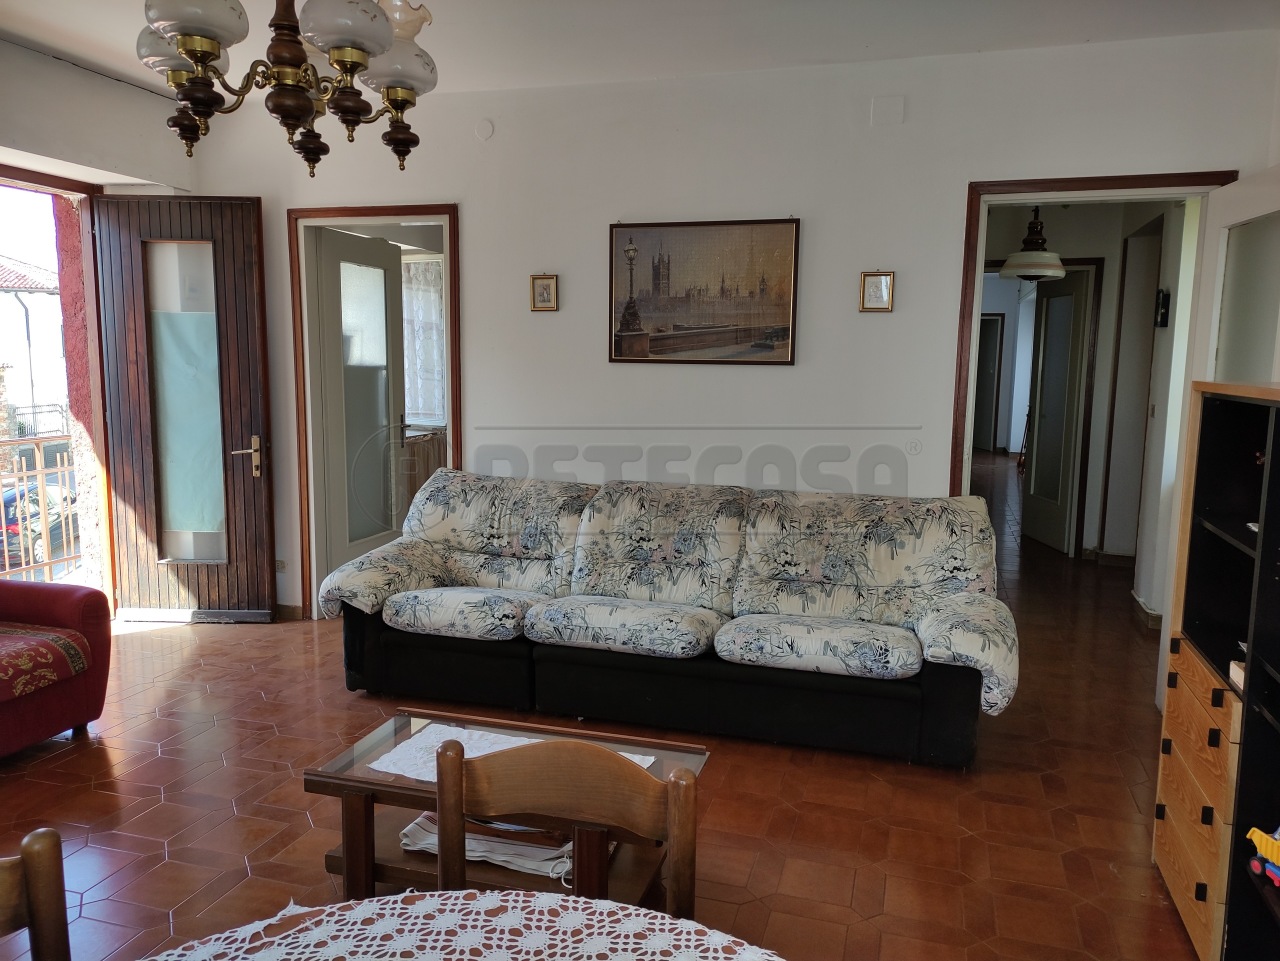 Appartamento in vendita a Tricesimo, 6 locali, prezzo € 80.000 | PortaleAgenzieImmobiliari.it